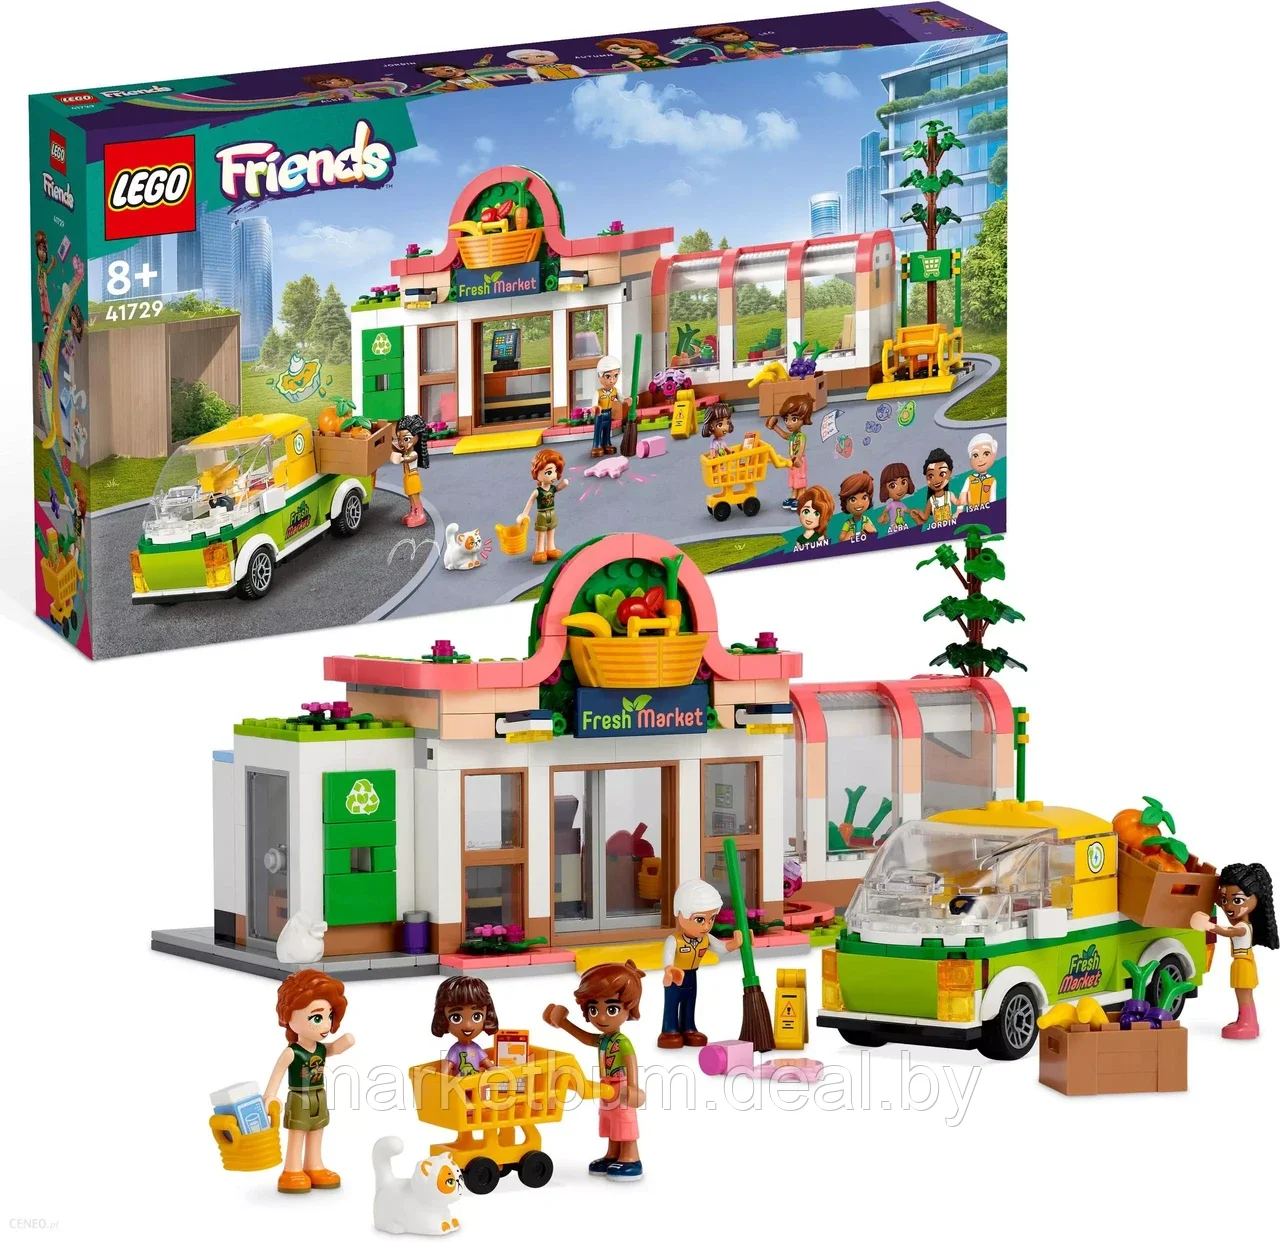 Конструктор LEGO Friends 41729, Магазин органических продуктов